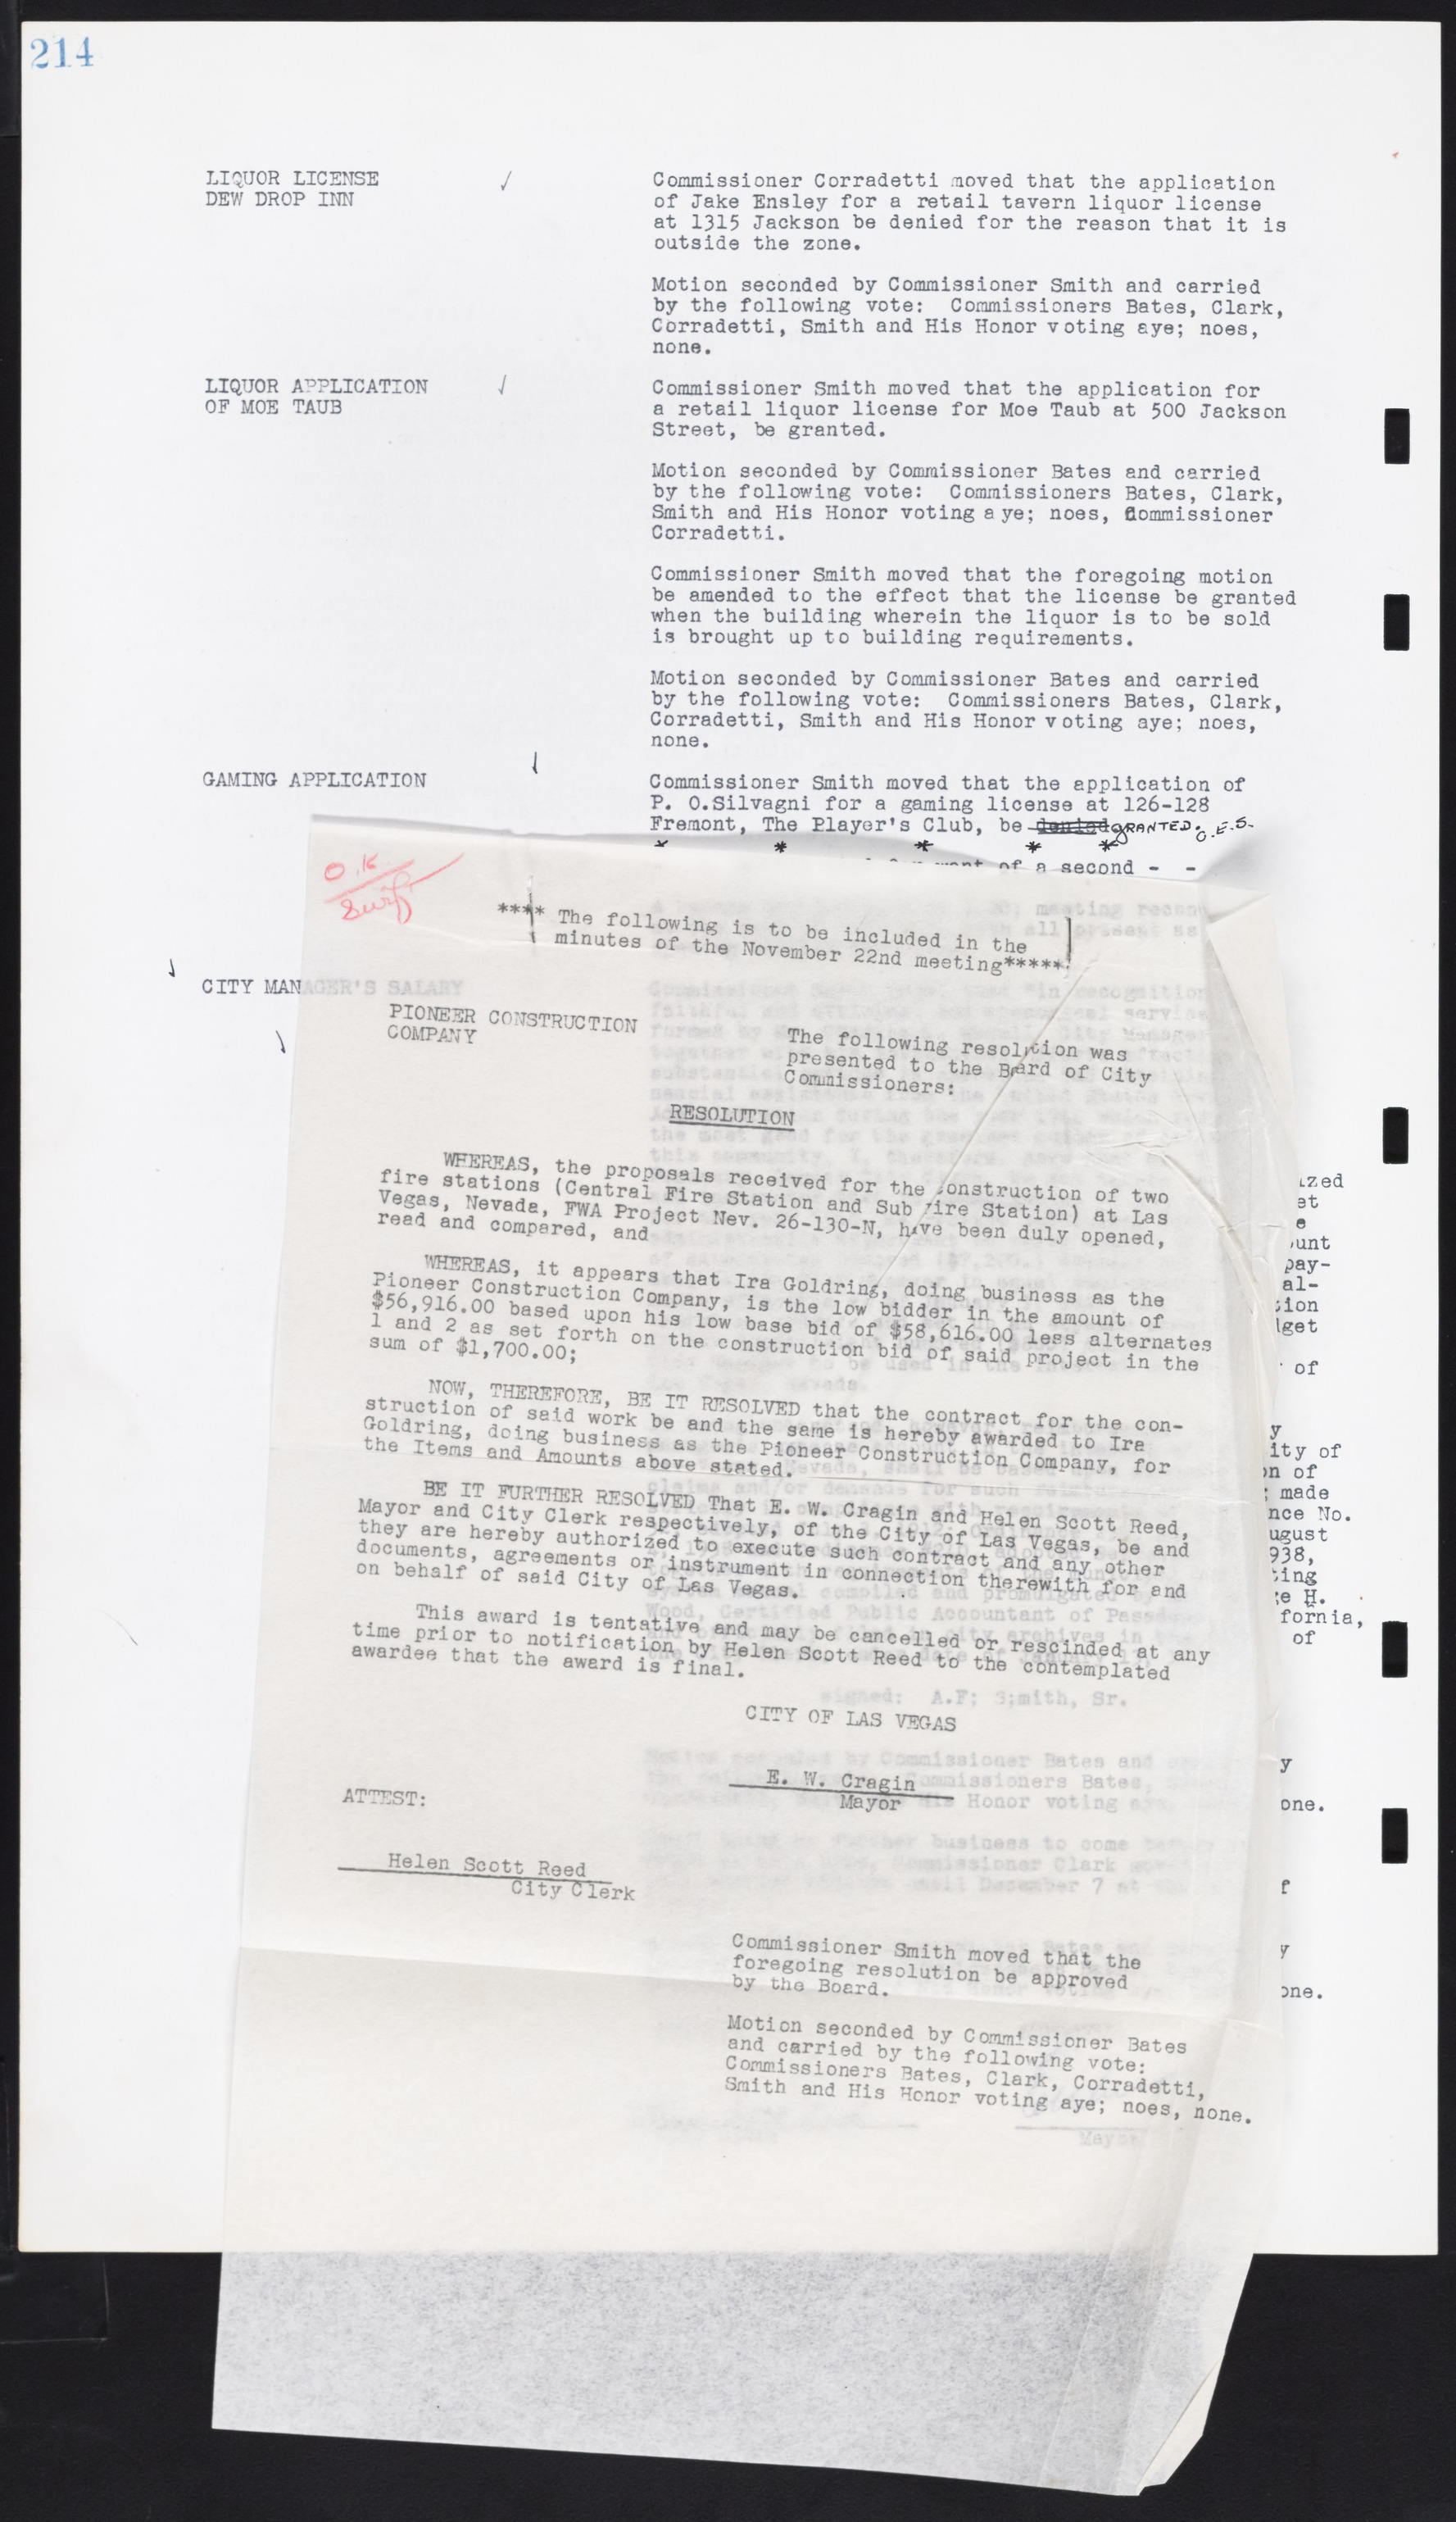 Las Vegas City Commission Minutes, August 11, 1942 to December 30, 1946, lvc000005-233